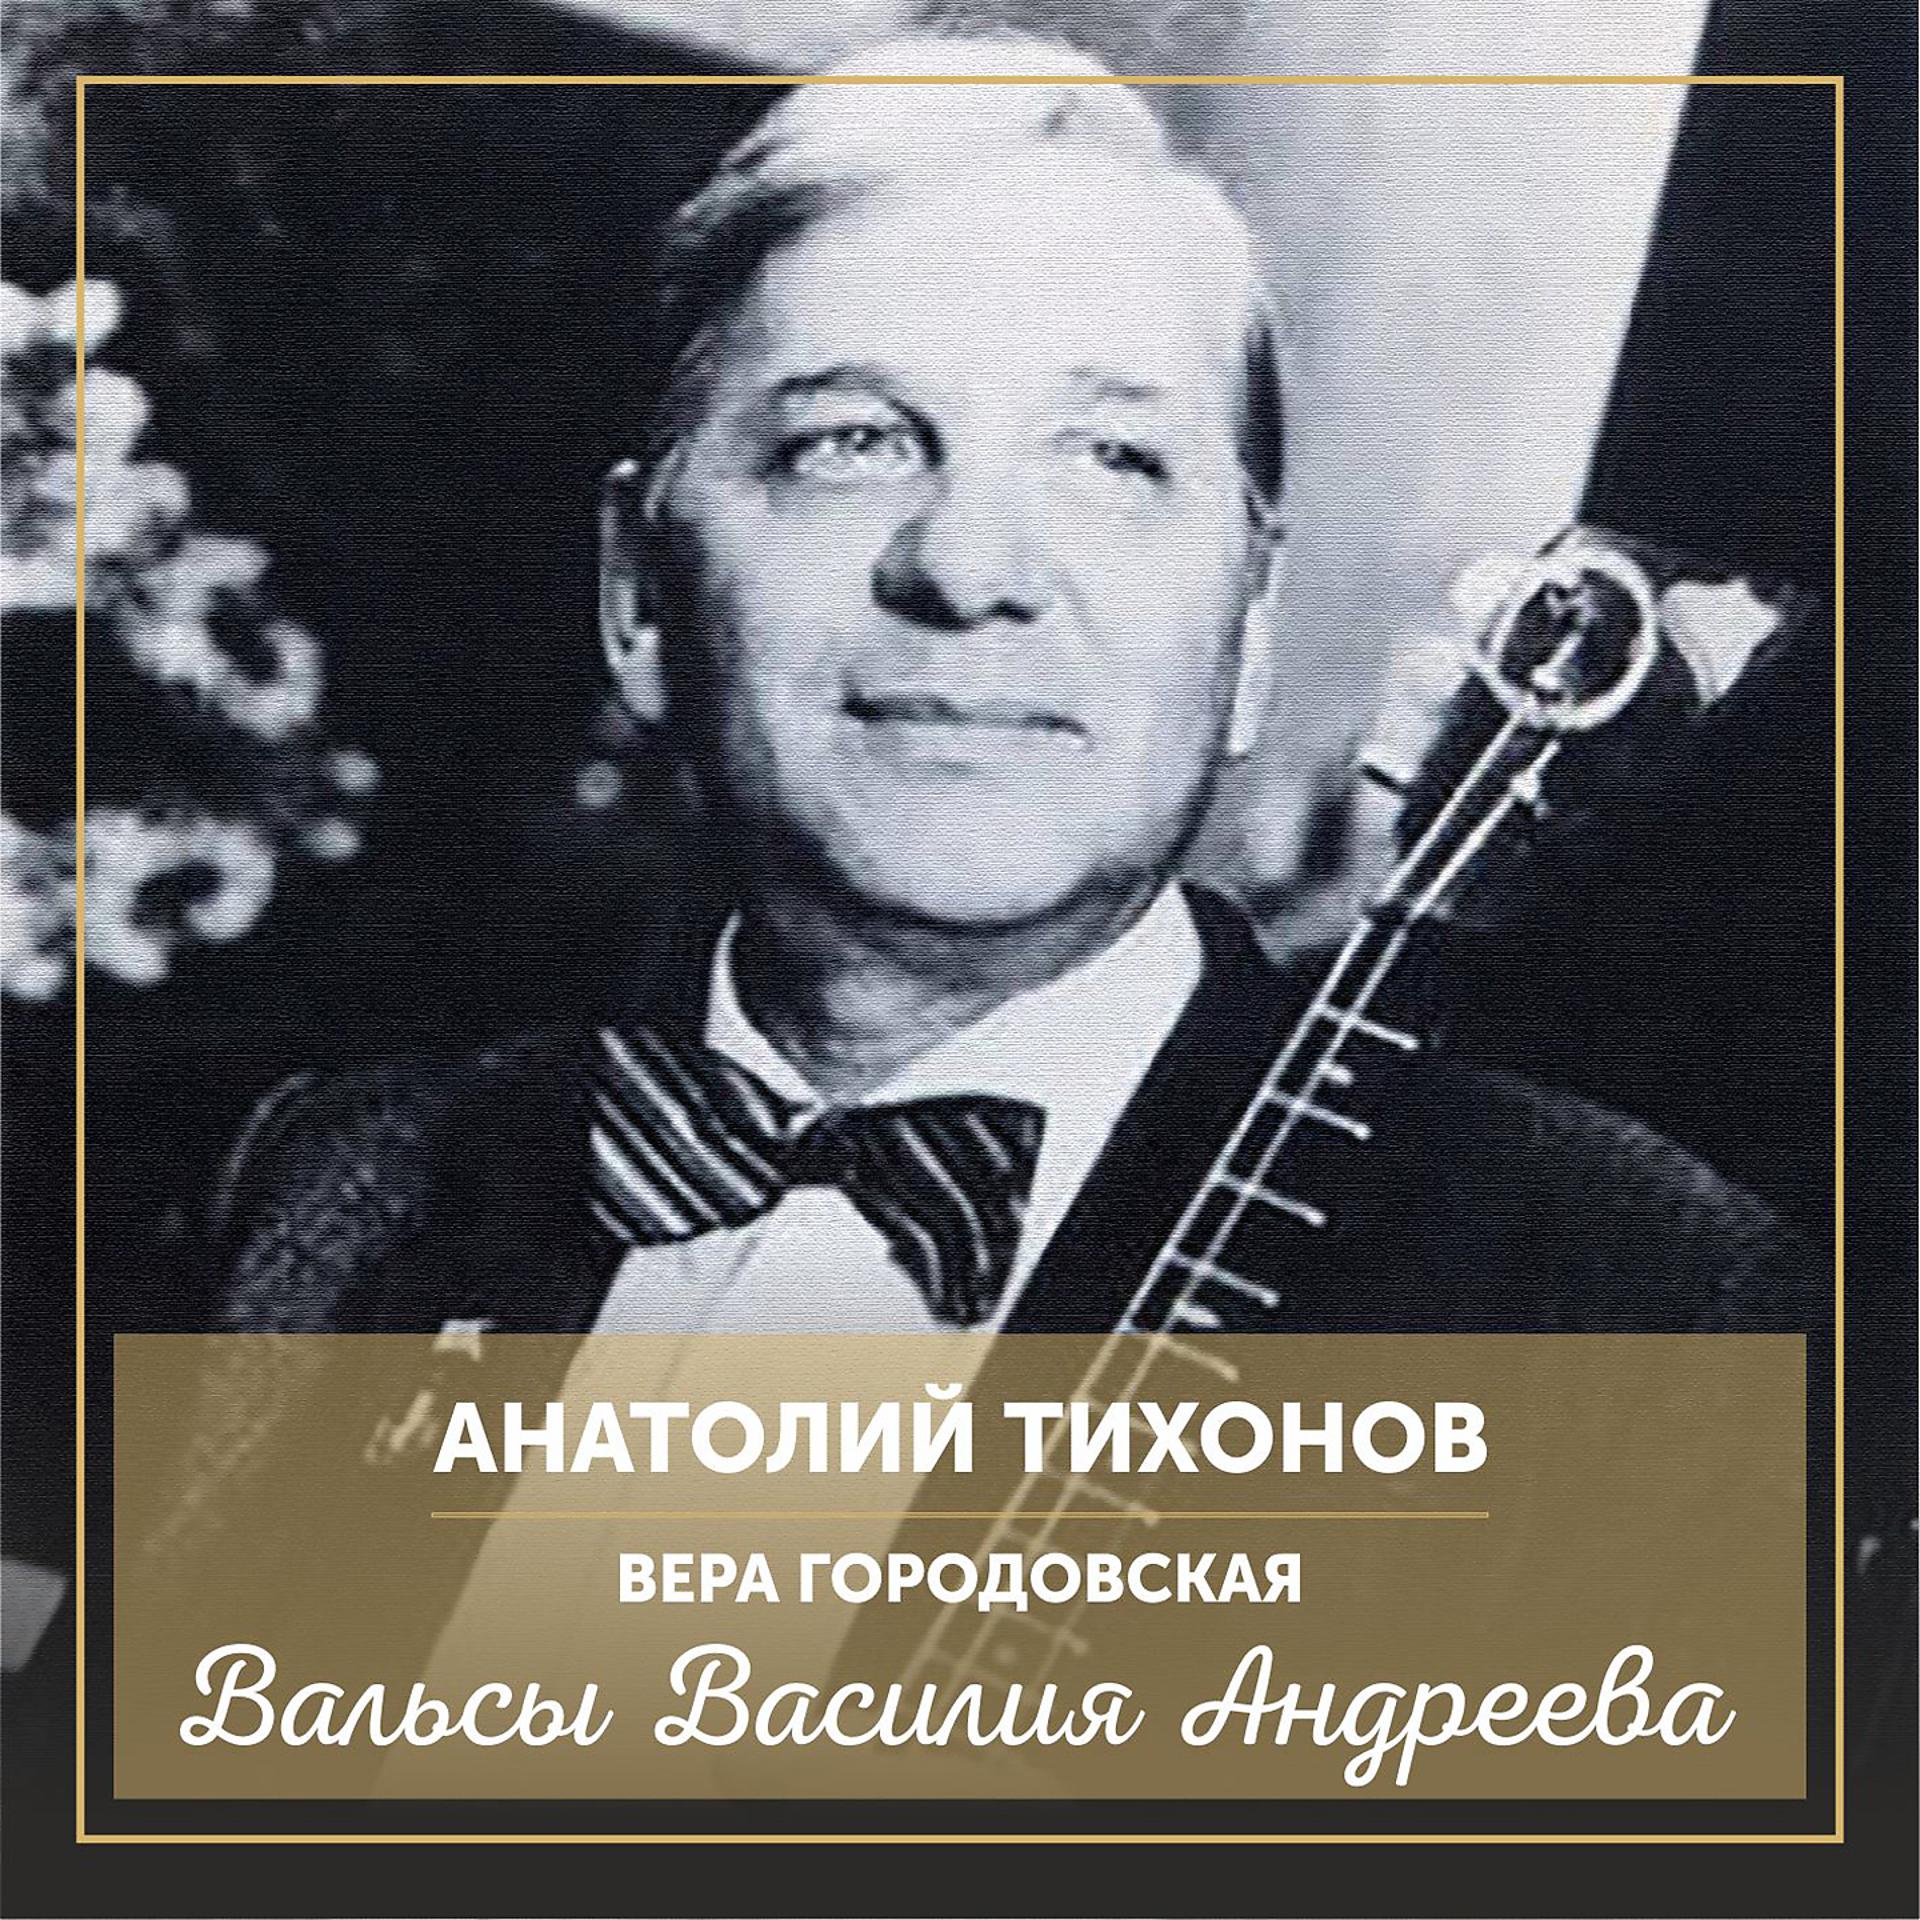 Постер к треку Анатолий Тихонов - Гармоника